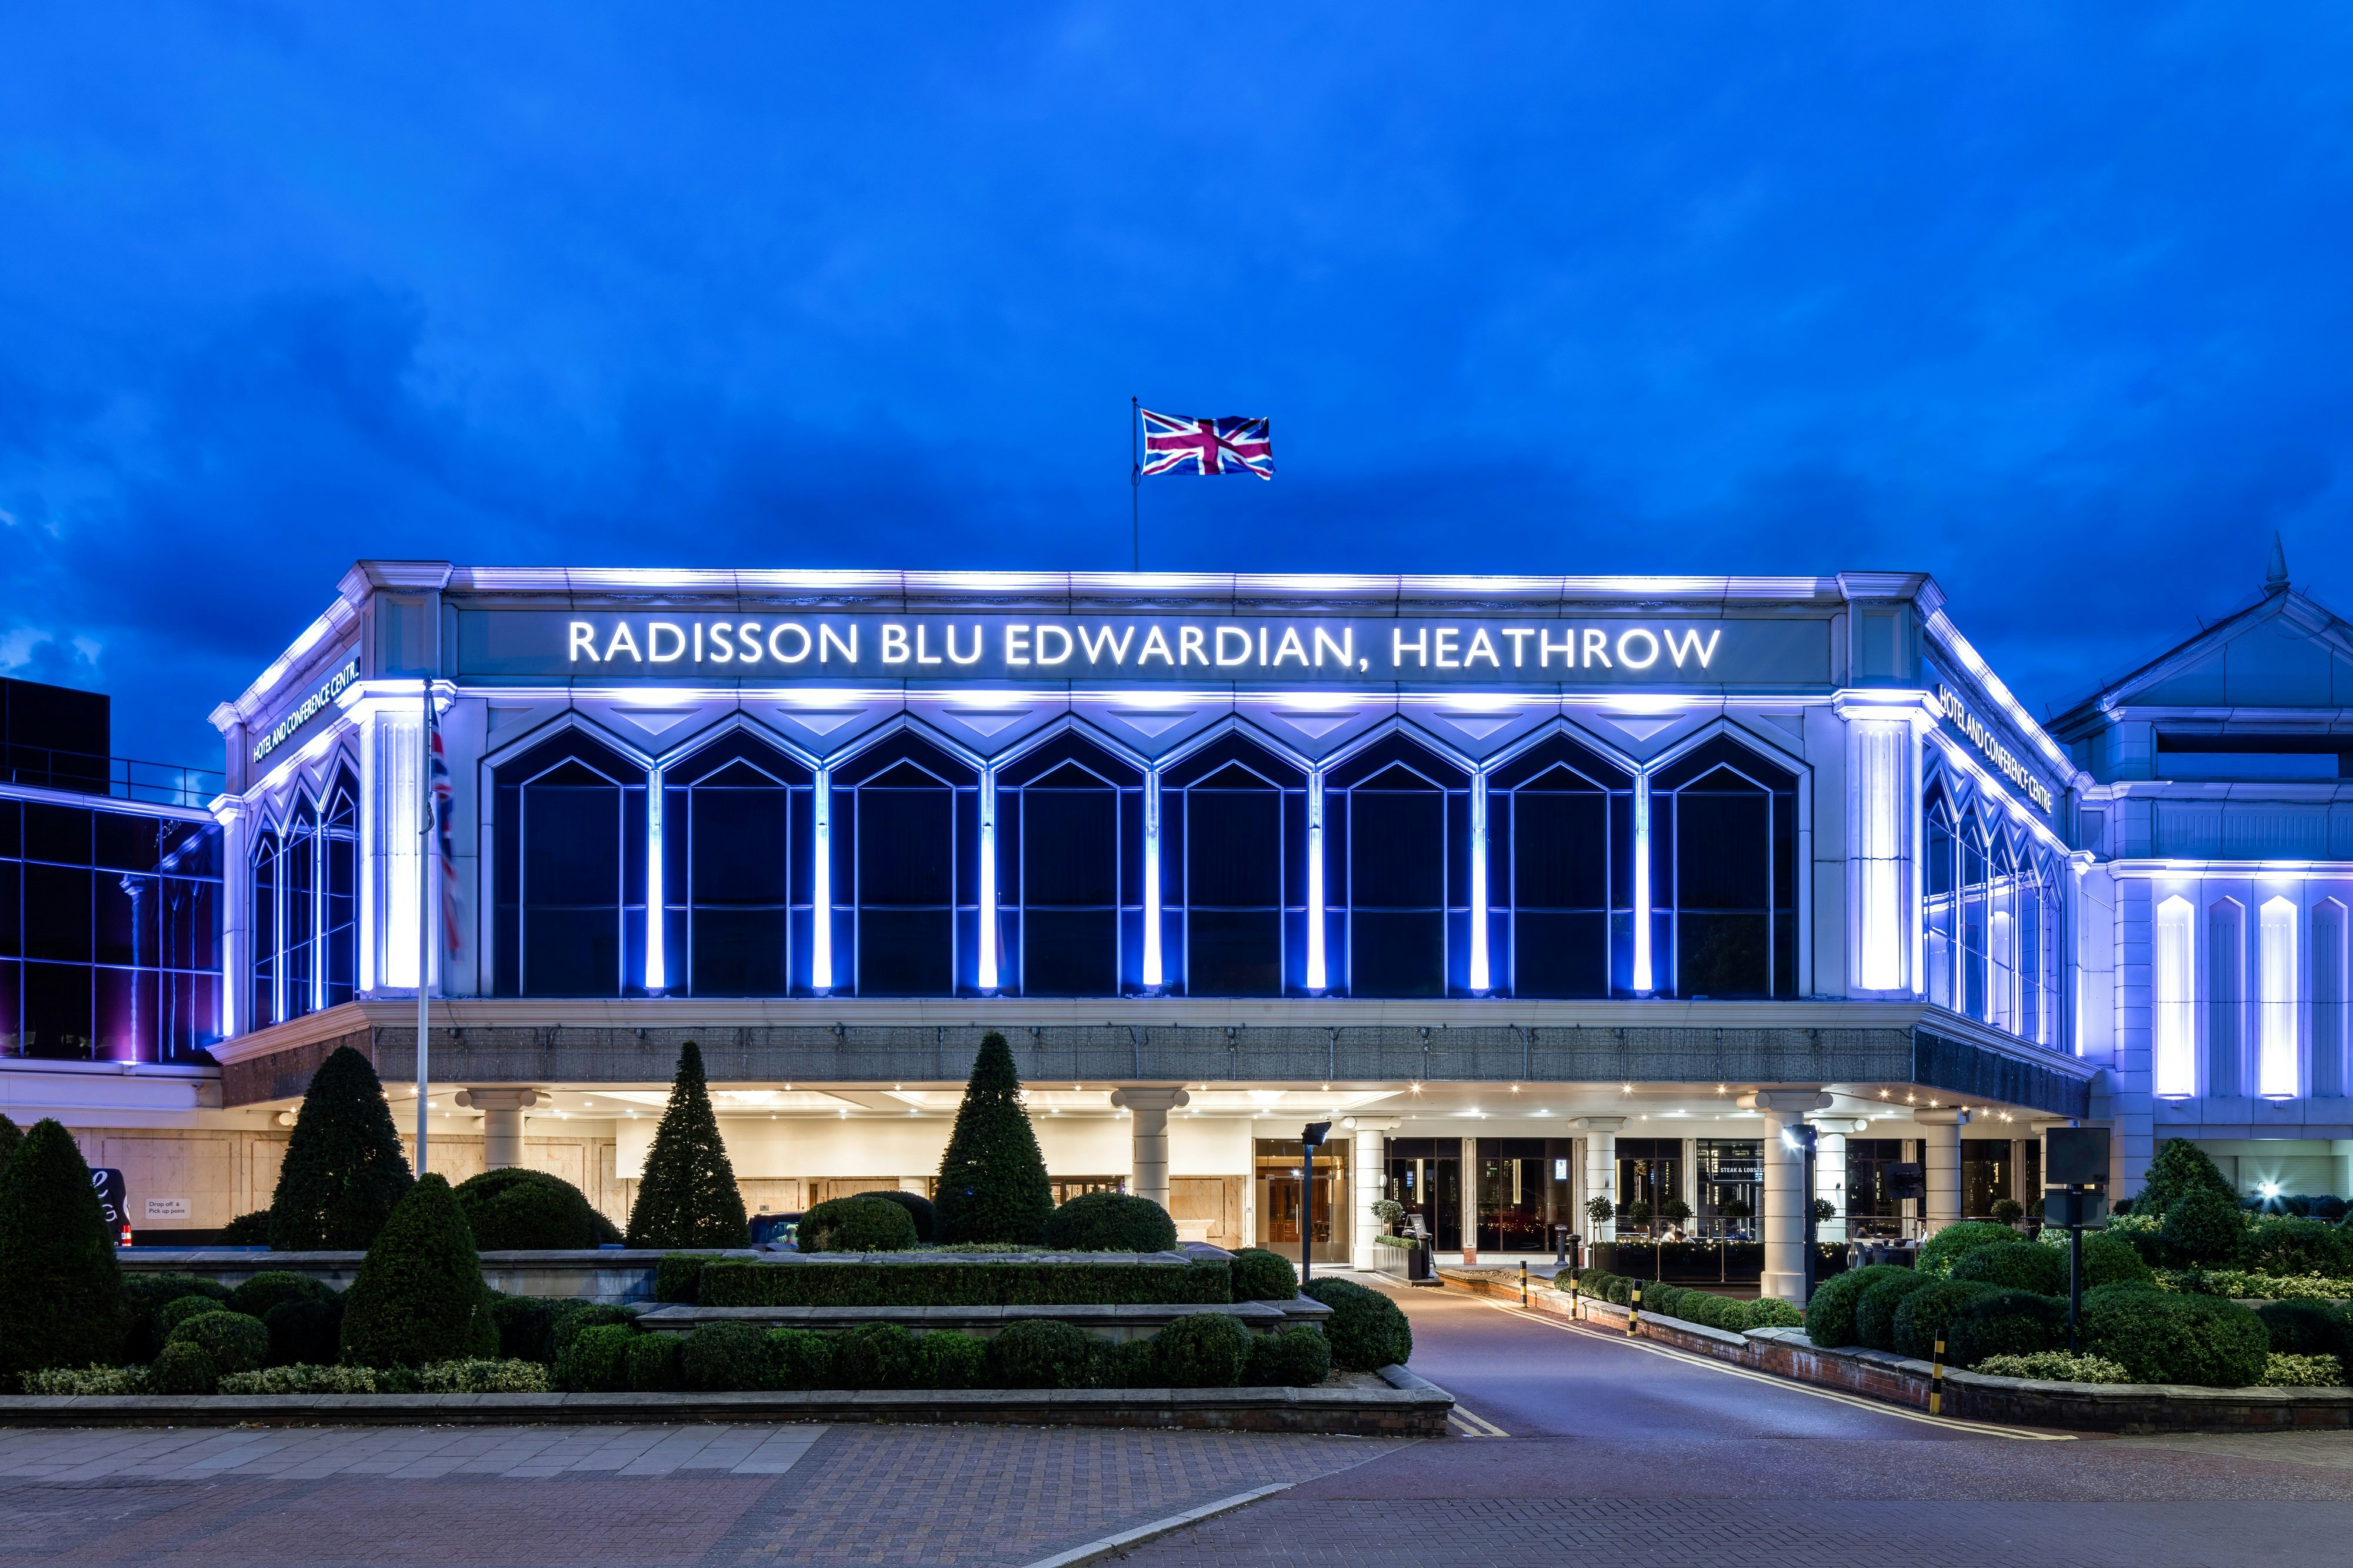 Radisson Blu Edwardian Heathrow - Connaught A image 2